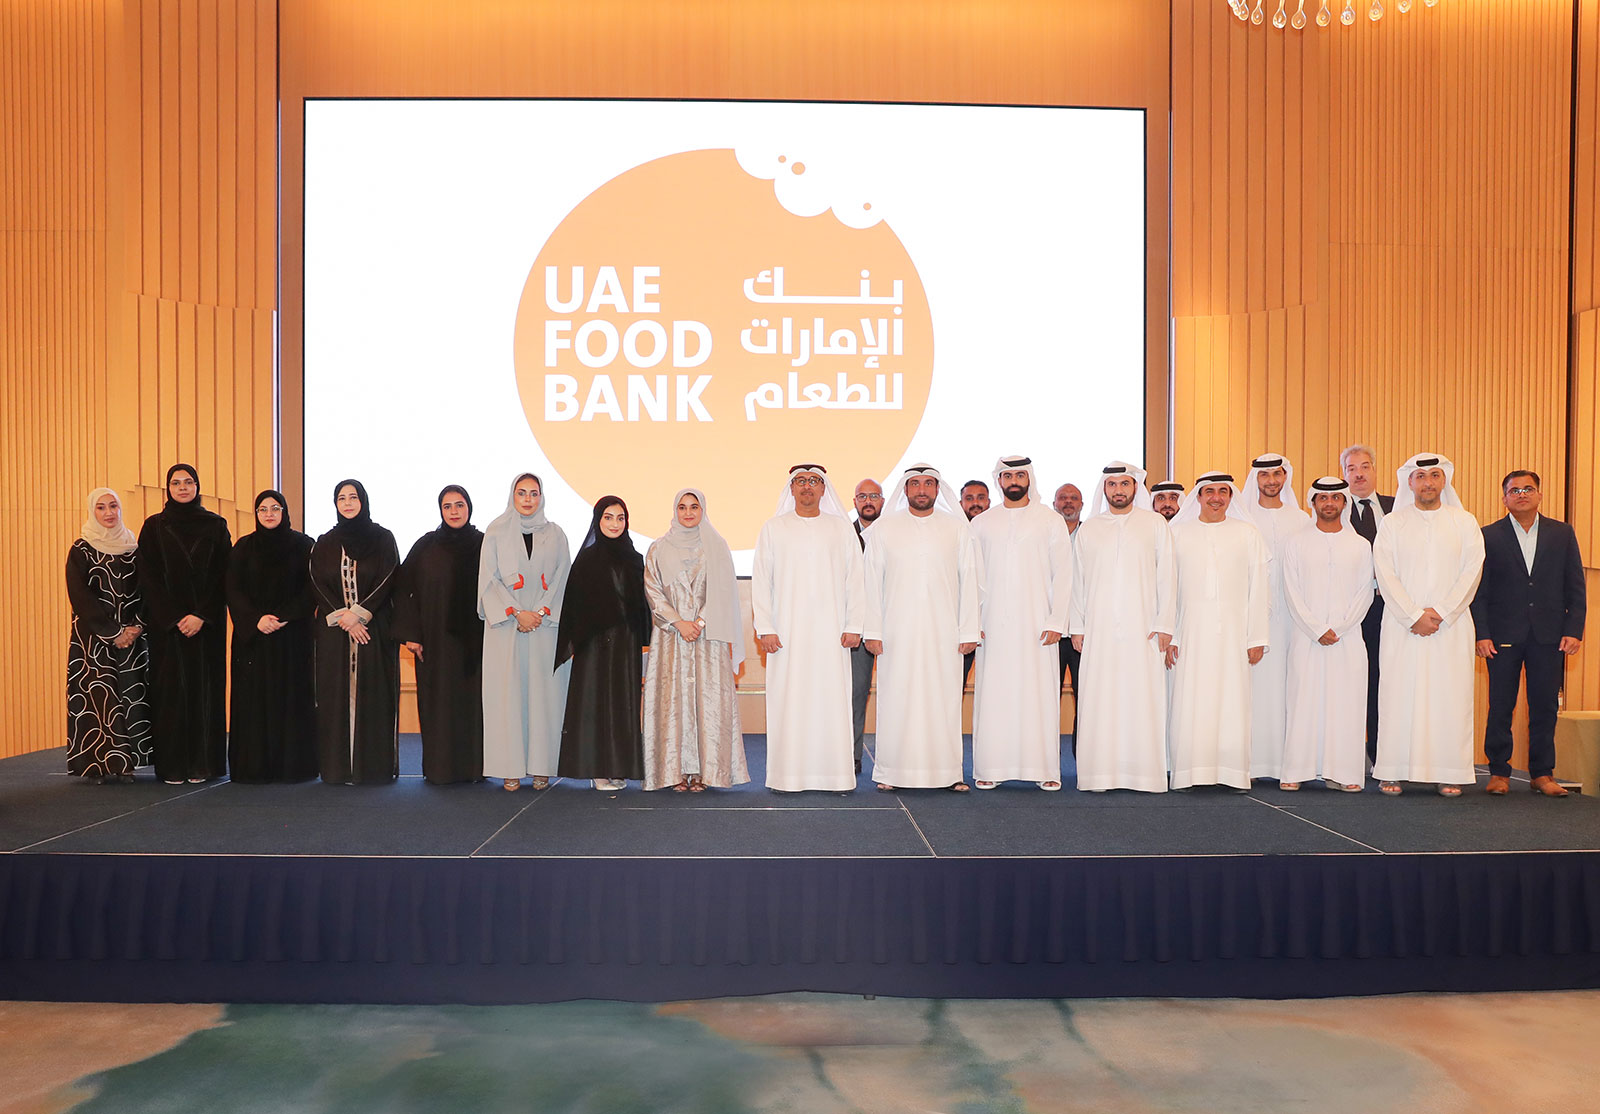 بنك الإمارات للطعام يُكرم شركاءه الاستراتيجيين والمساهمين والمتطوعين خلال حفله السنوي